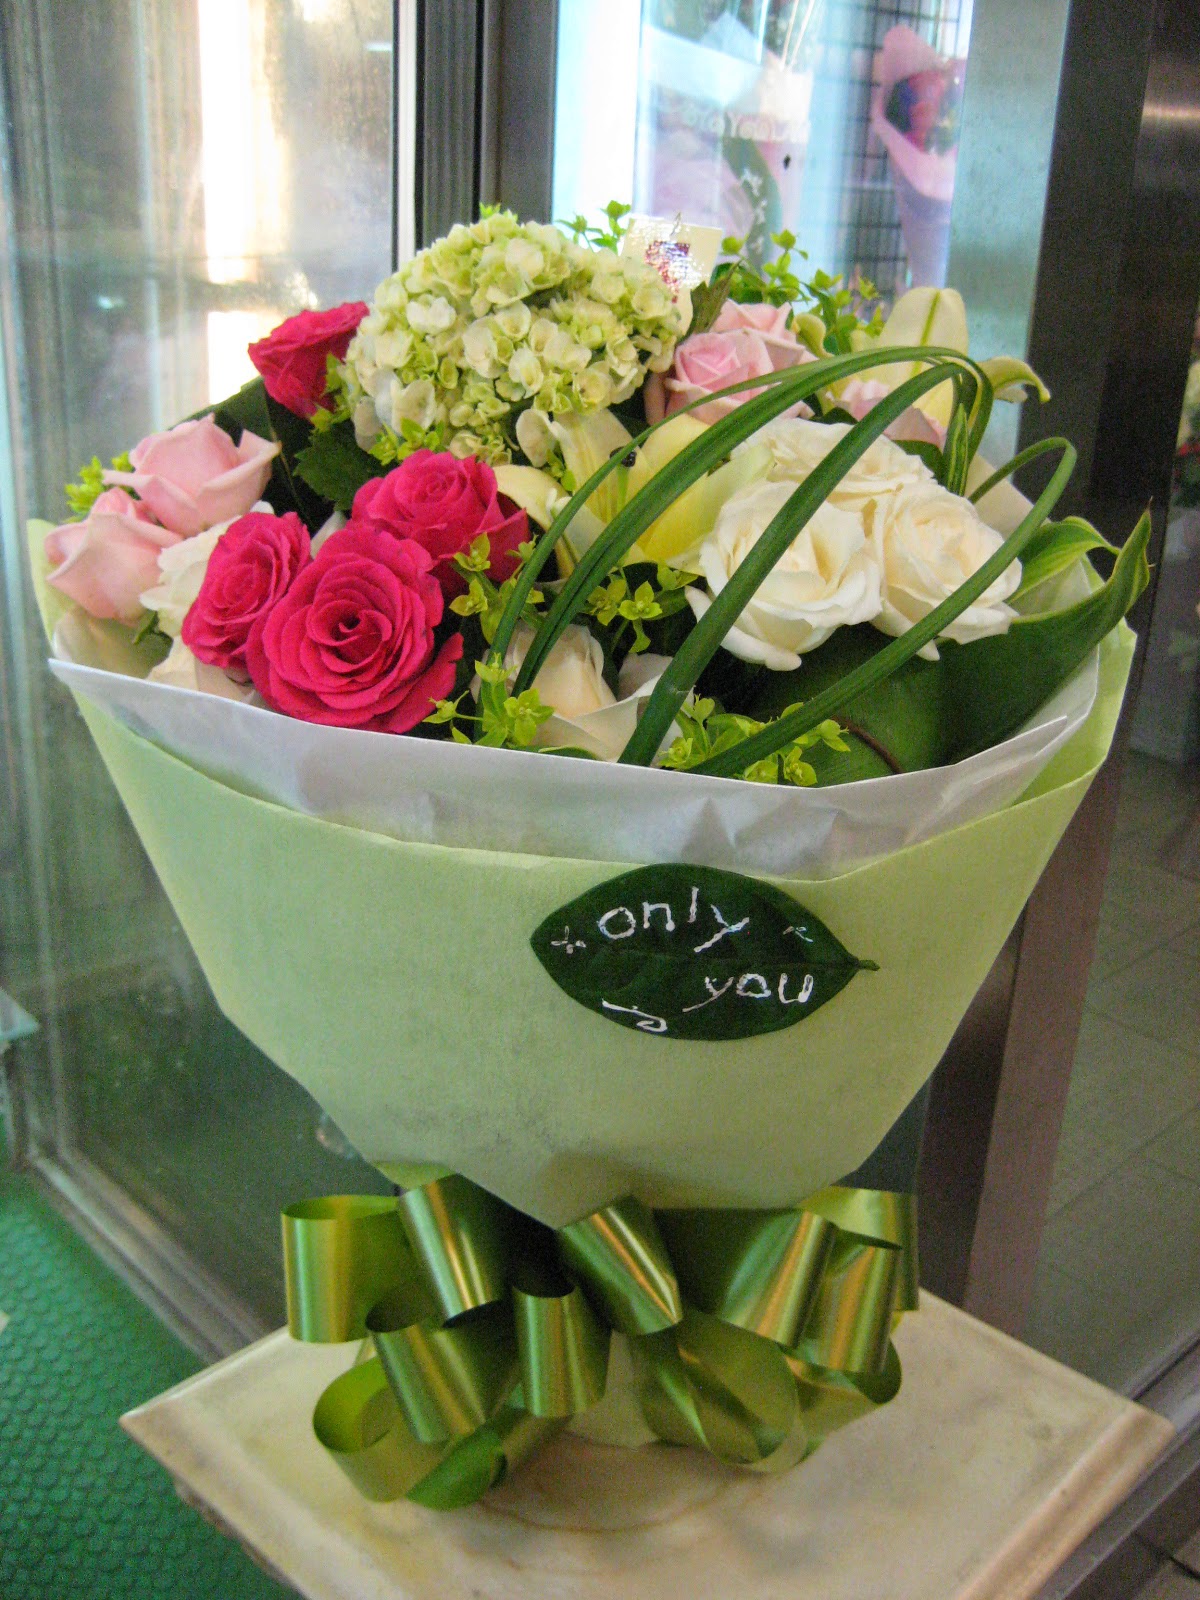 松田花藝專業花藝設計 七夕情人節 2014年8月2日 就要到了 情人們準備好禮物了嗎